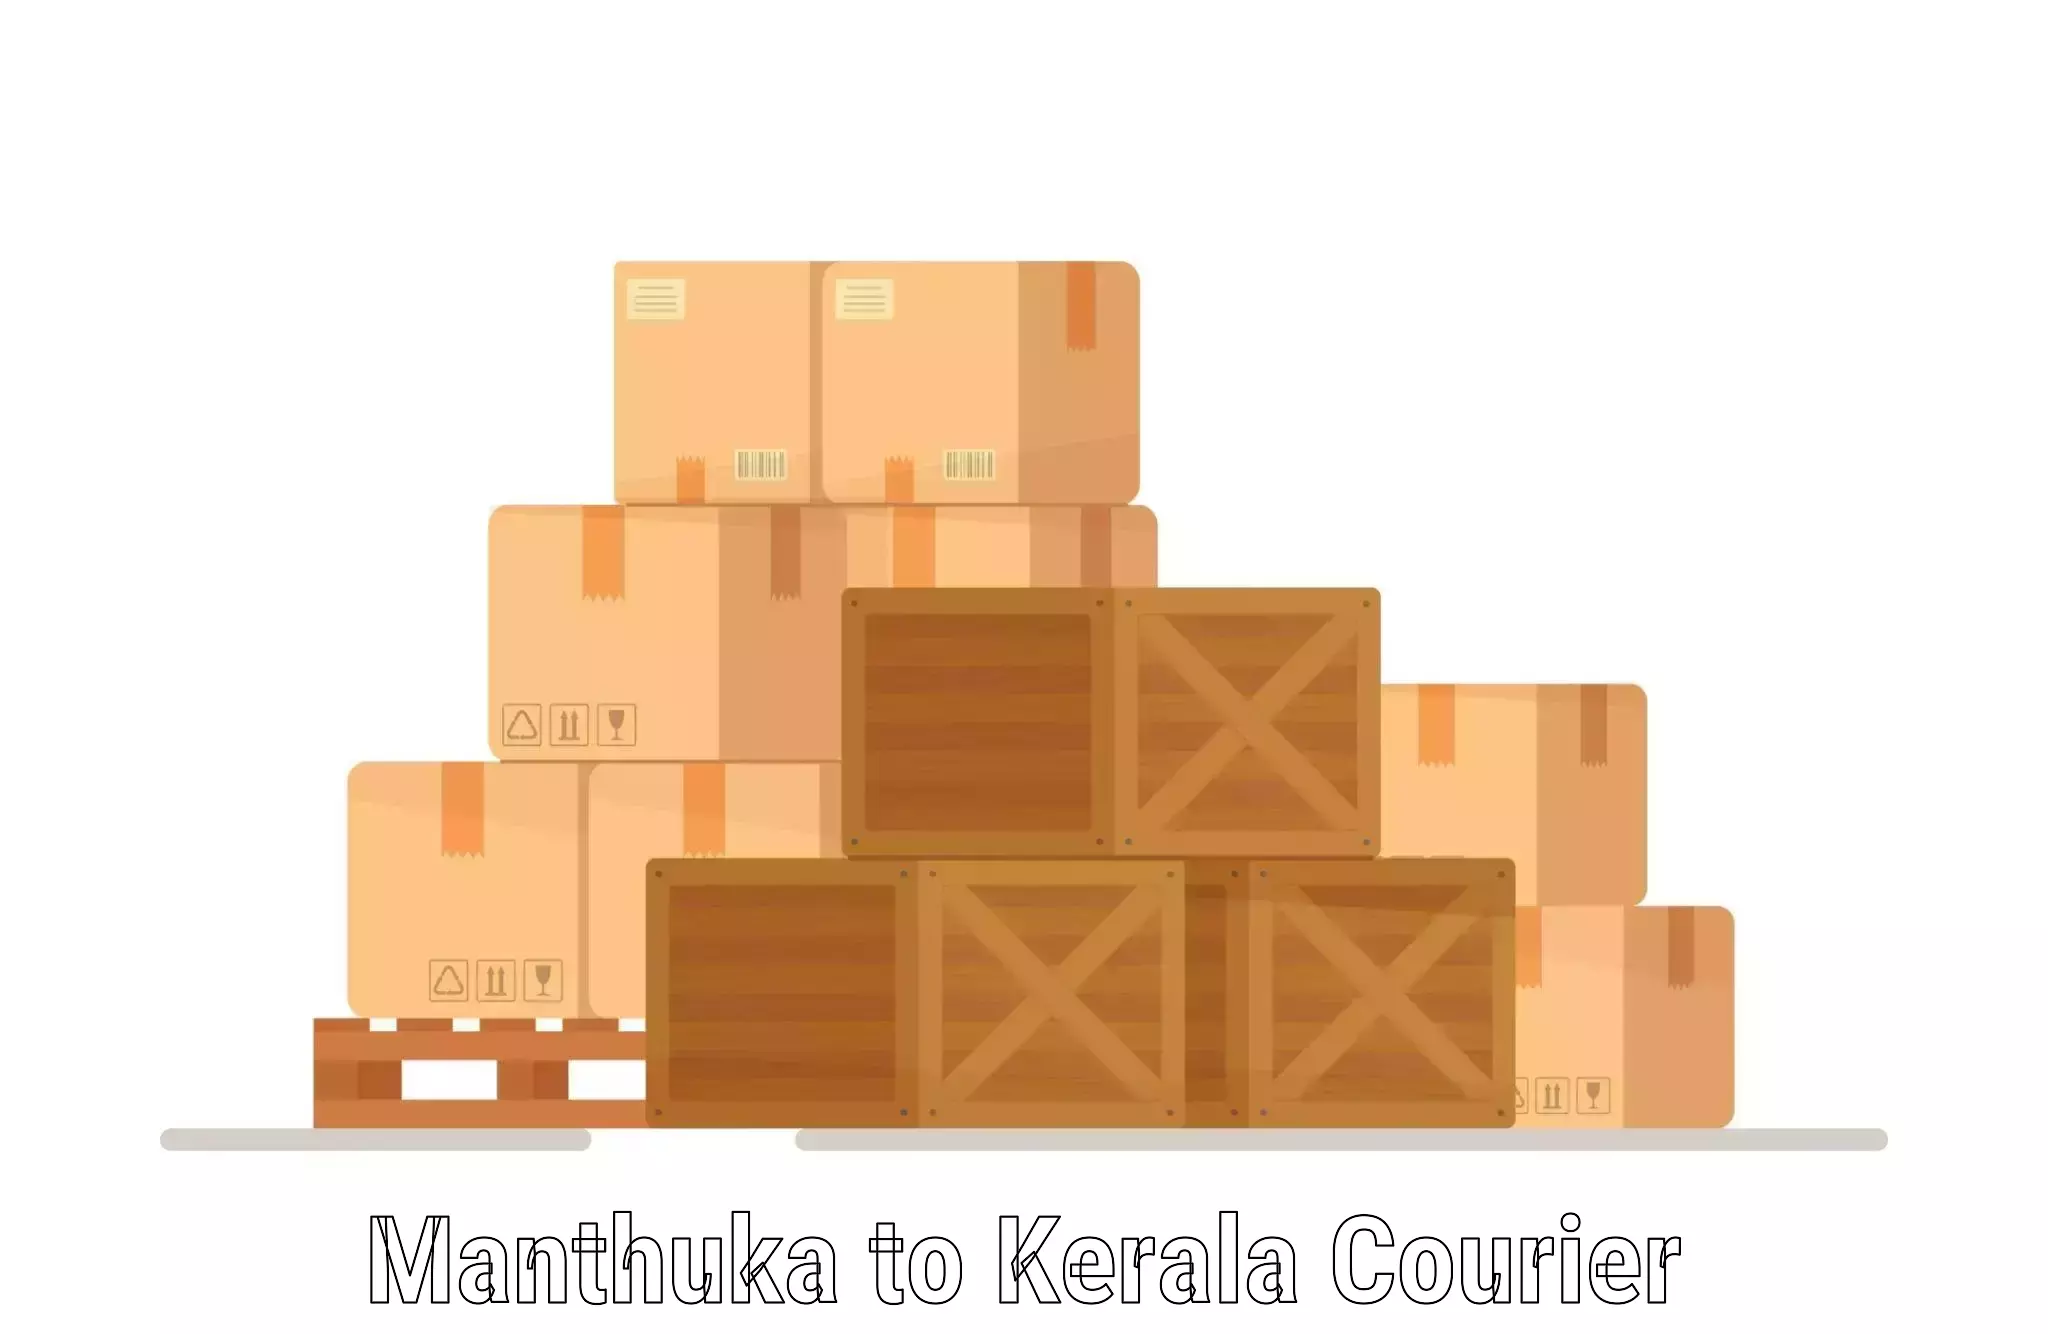 Urgent courier needs Manthuka to Angamaly